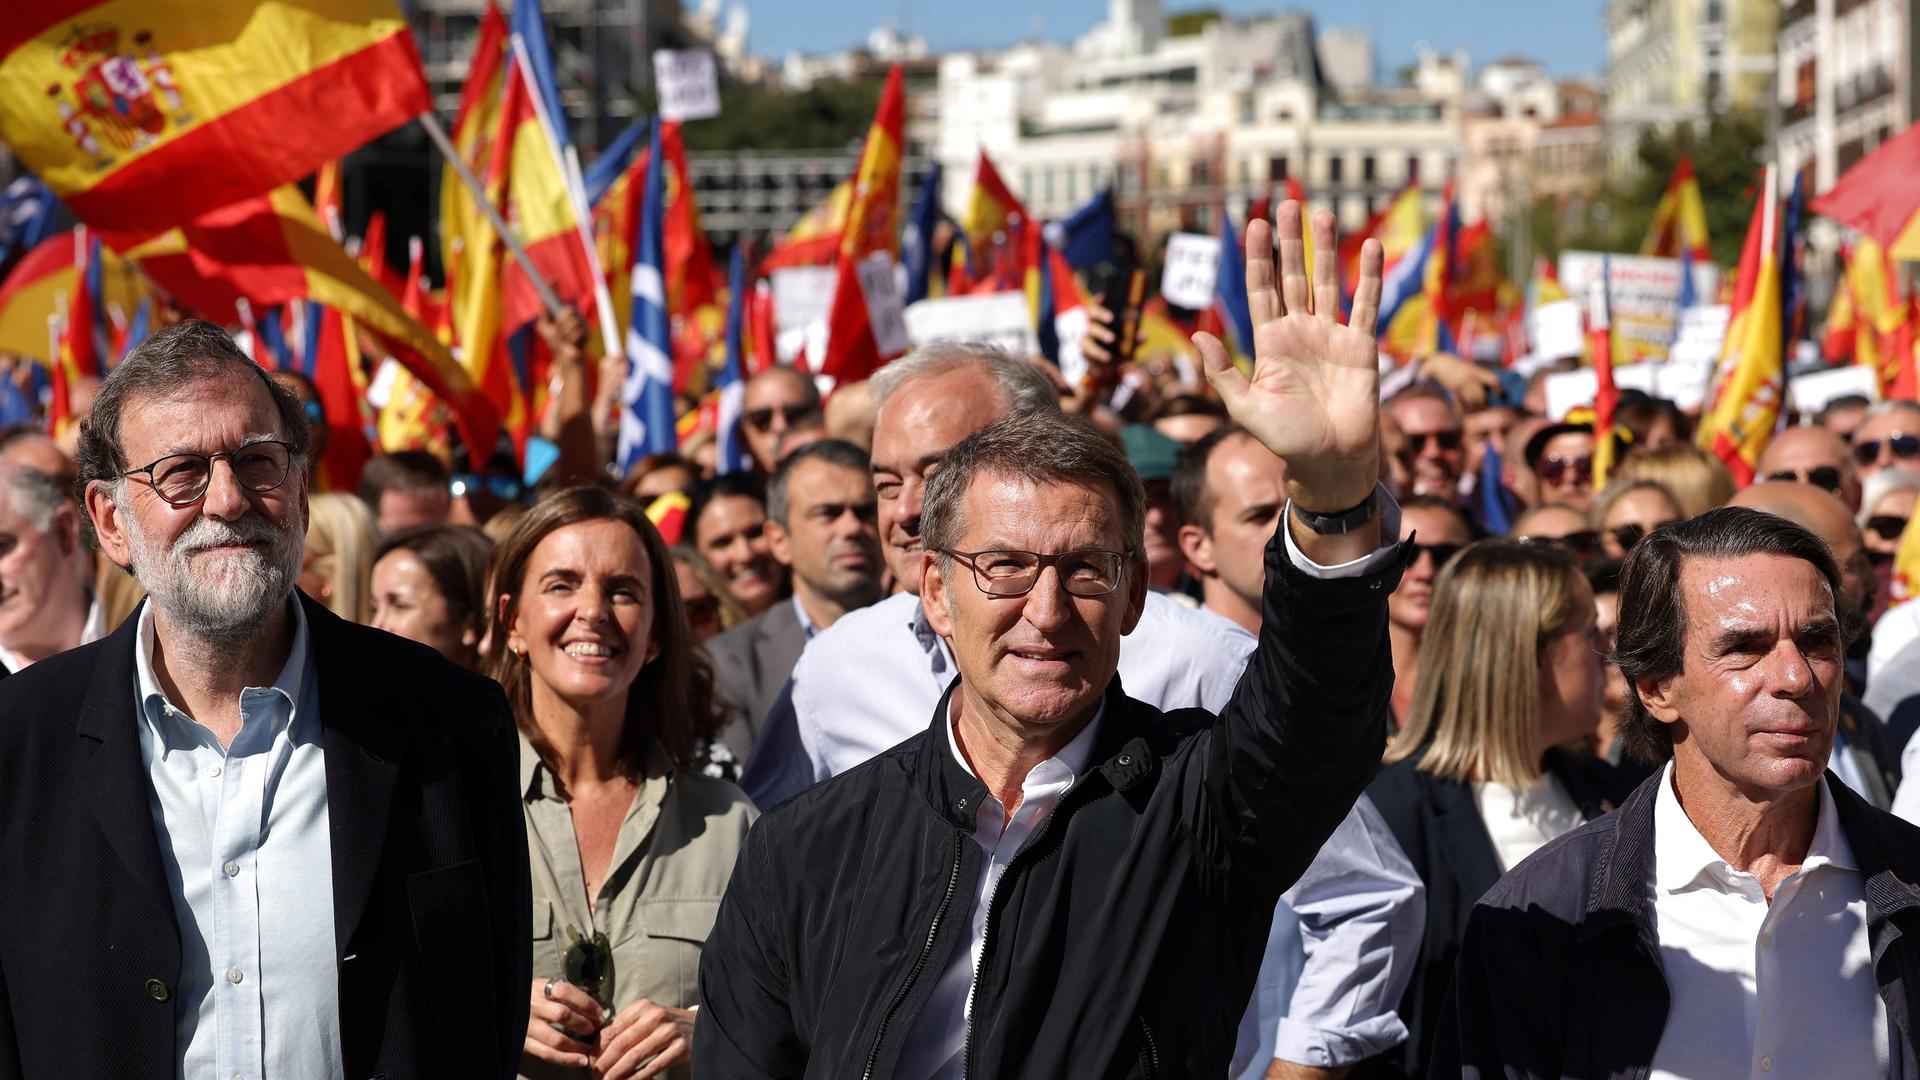 Alberto Nunez Feijóo geht an der Spitze von tausenden Menschen und winkt in die Kamera. Neben ihm die früheren spanischen Ministerpräsidenten Mariano Rajoy (l.) und José Maria Aznar (r.).